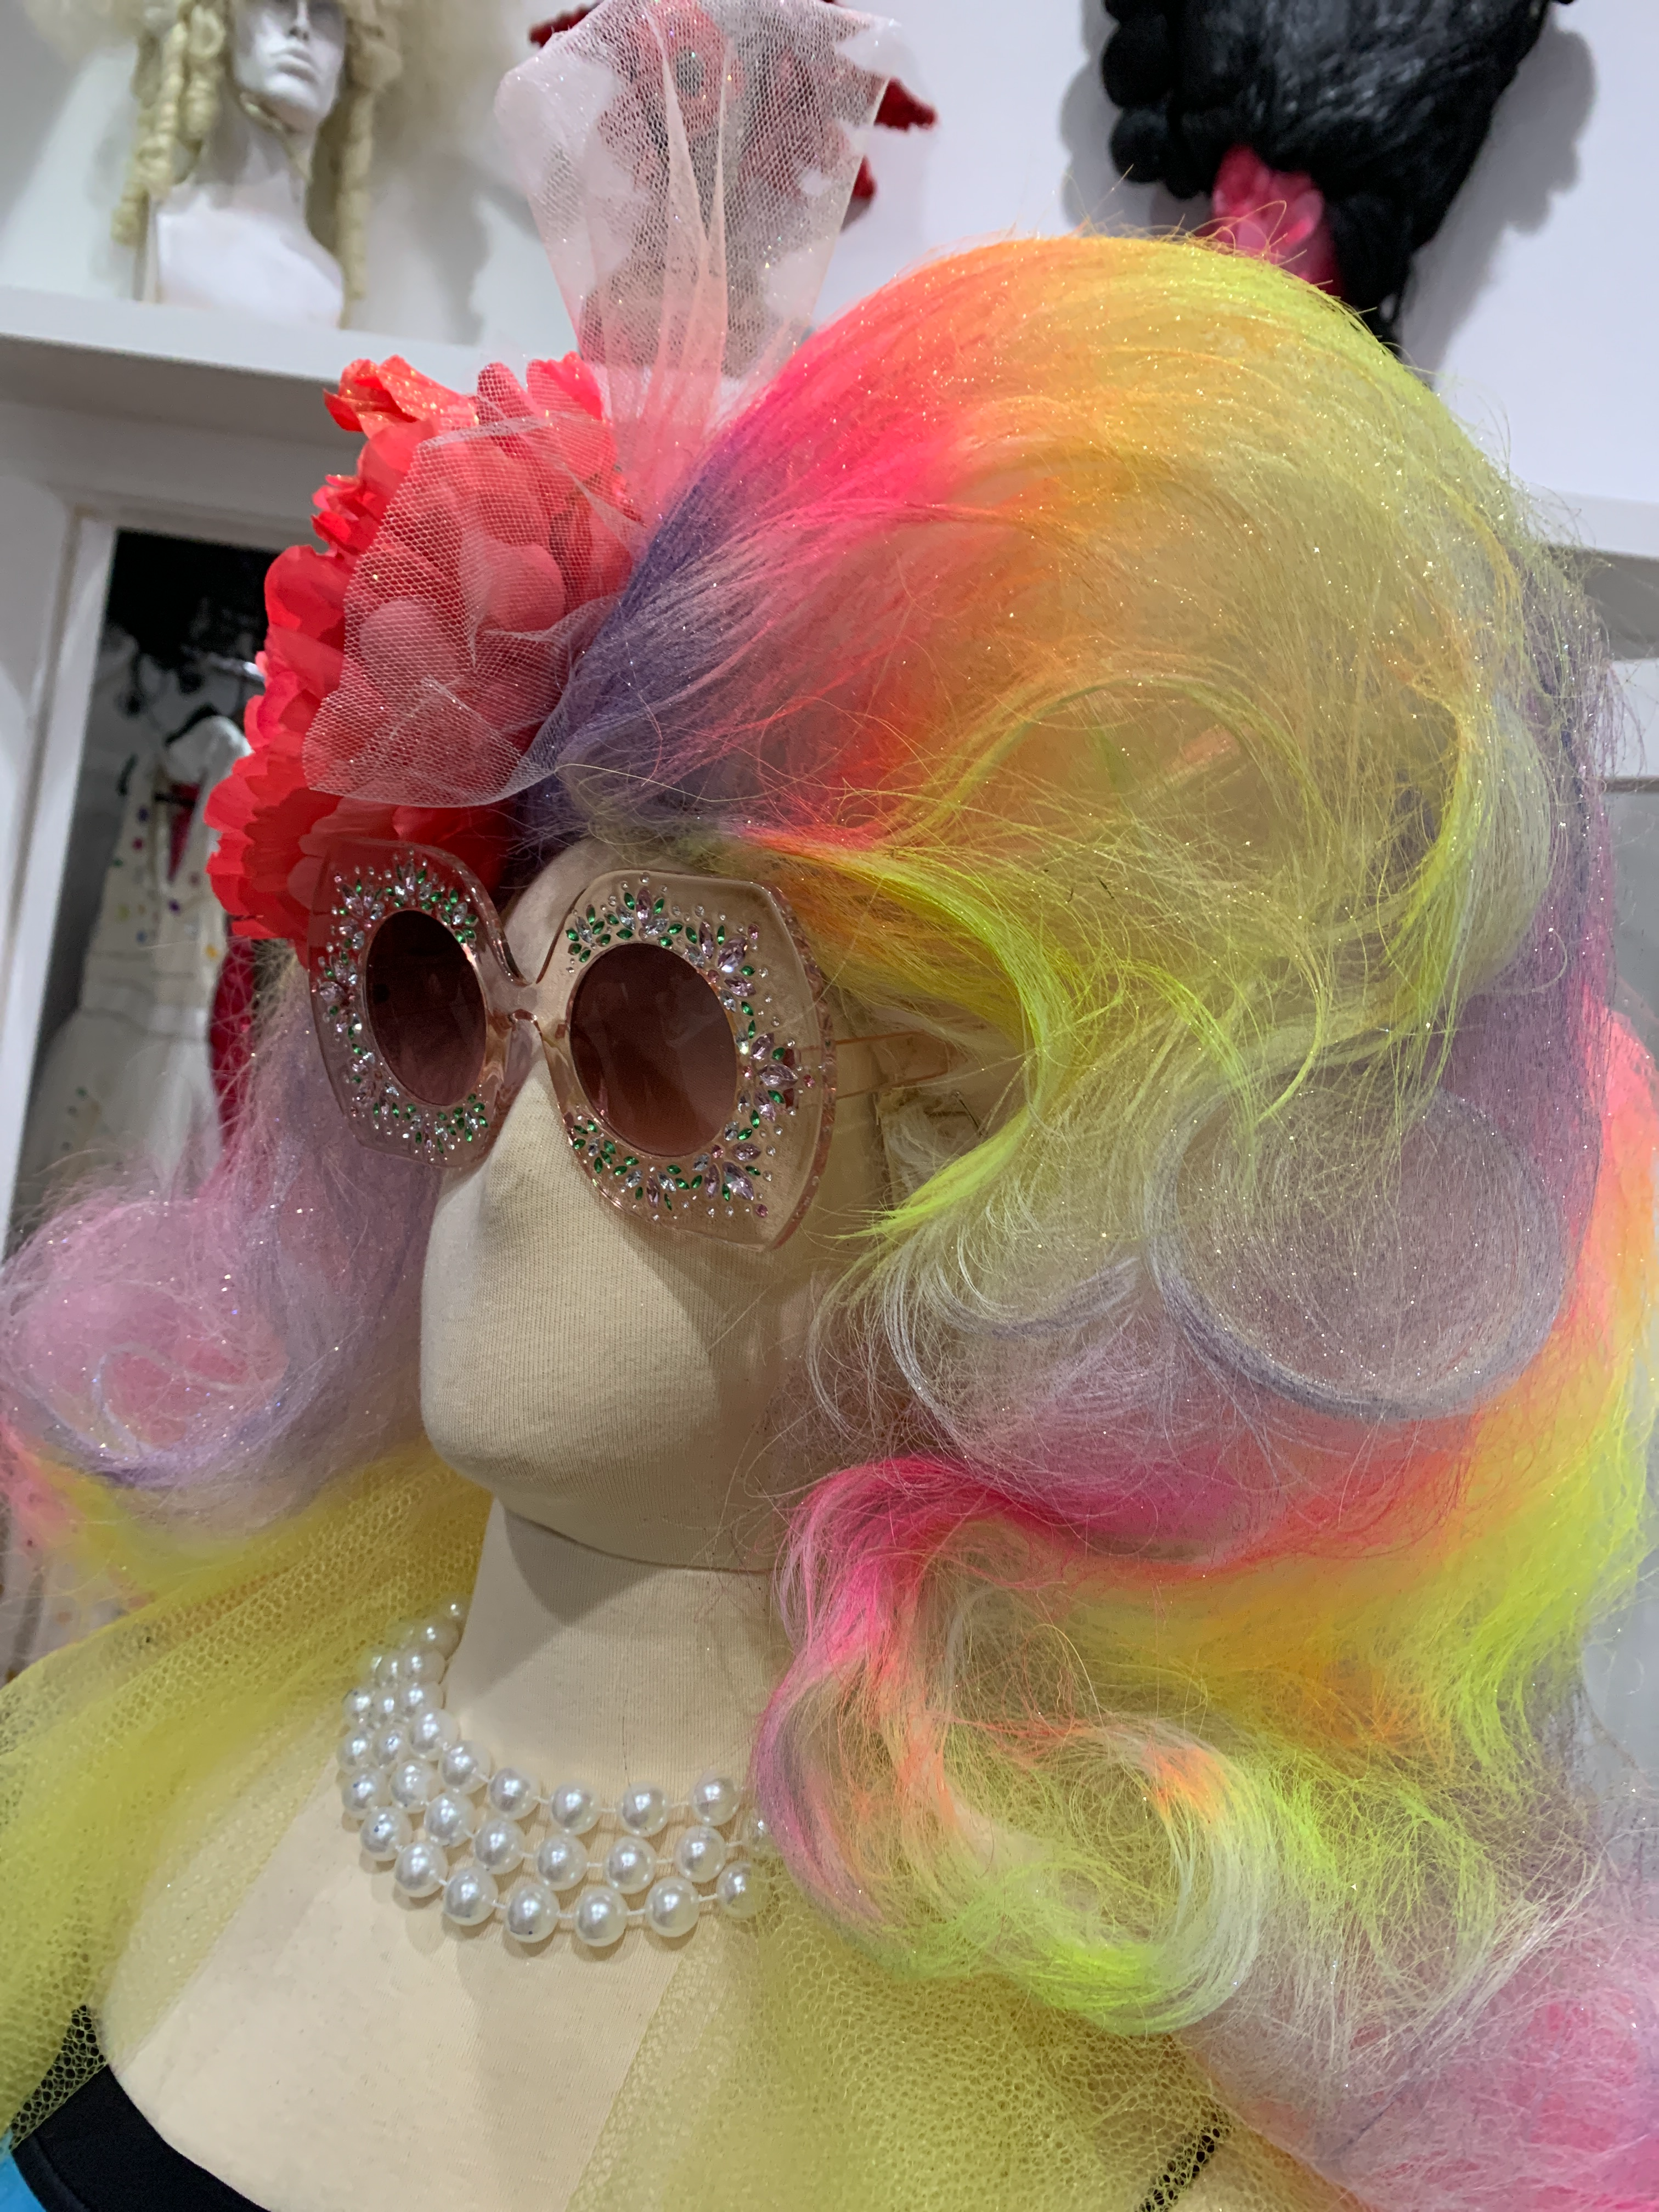 Custom Designed Wig by Artist Stacey Vest $169